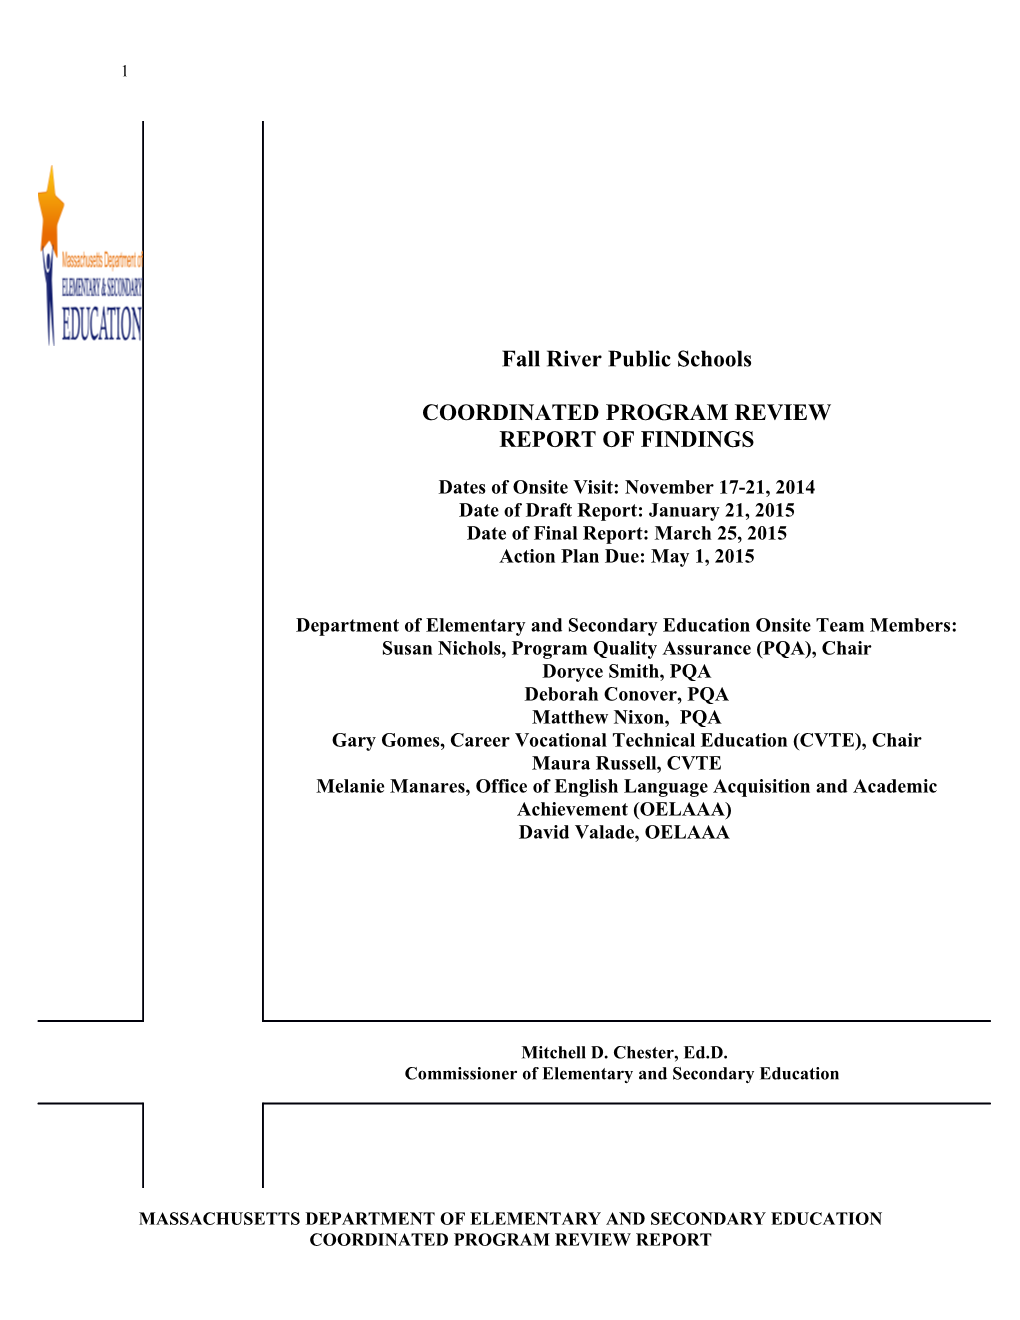 Fall River Public Schools CPR Final Report 2015